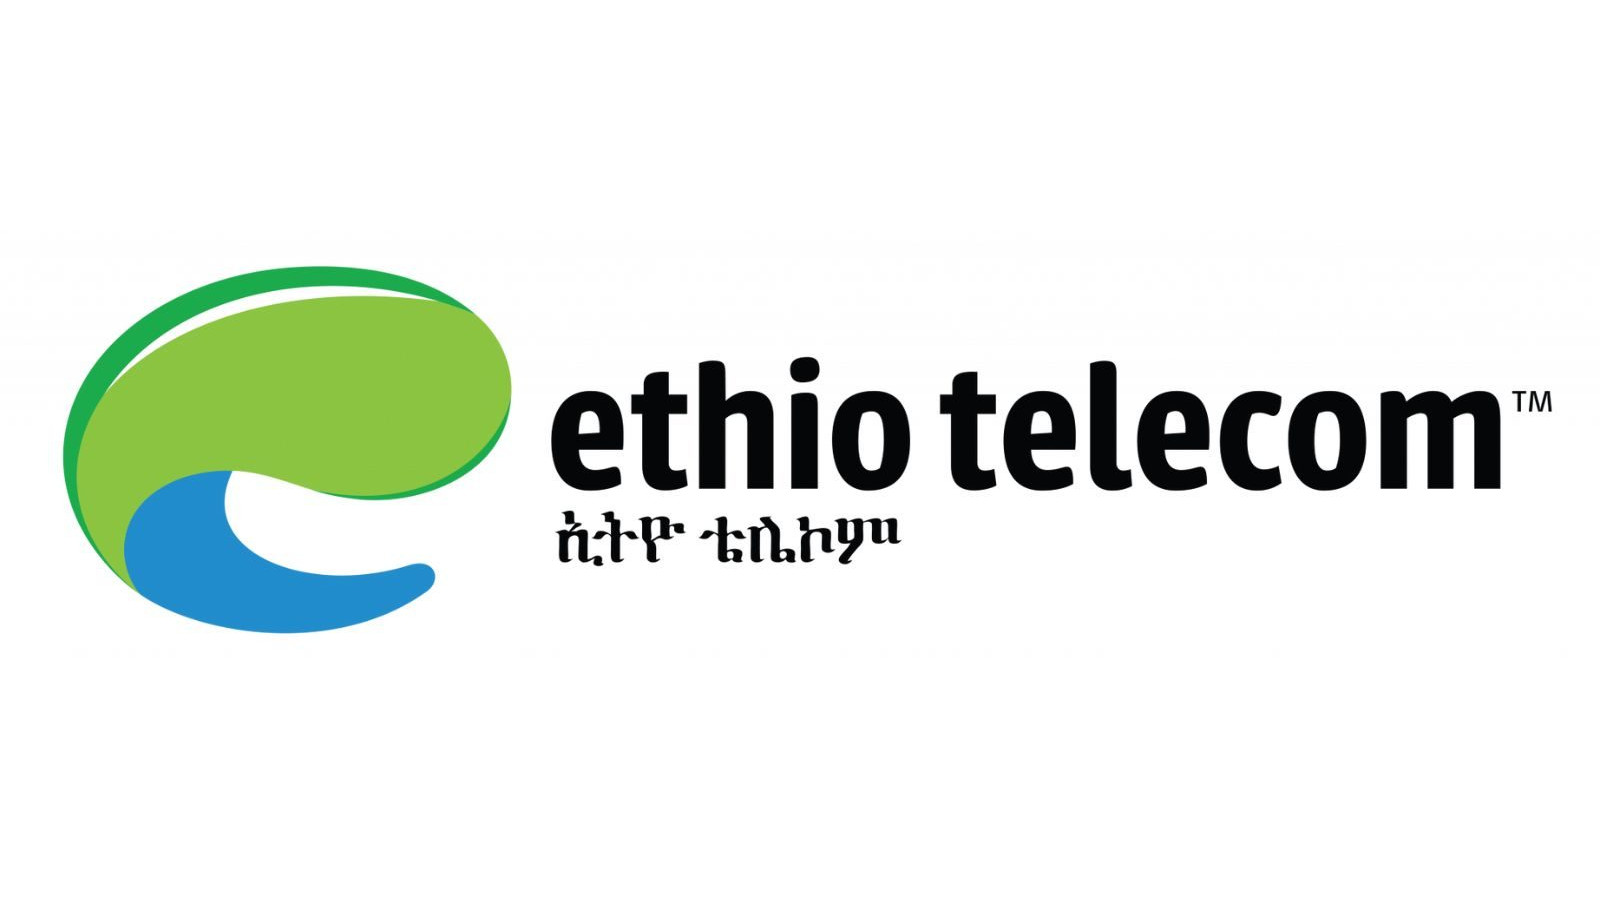 Ethiotelecom 5 ETB Mobile Top-up ET, 0.68 usd